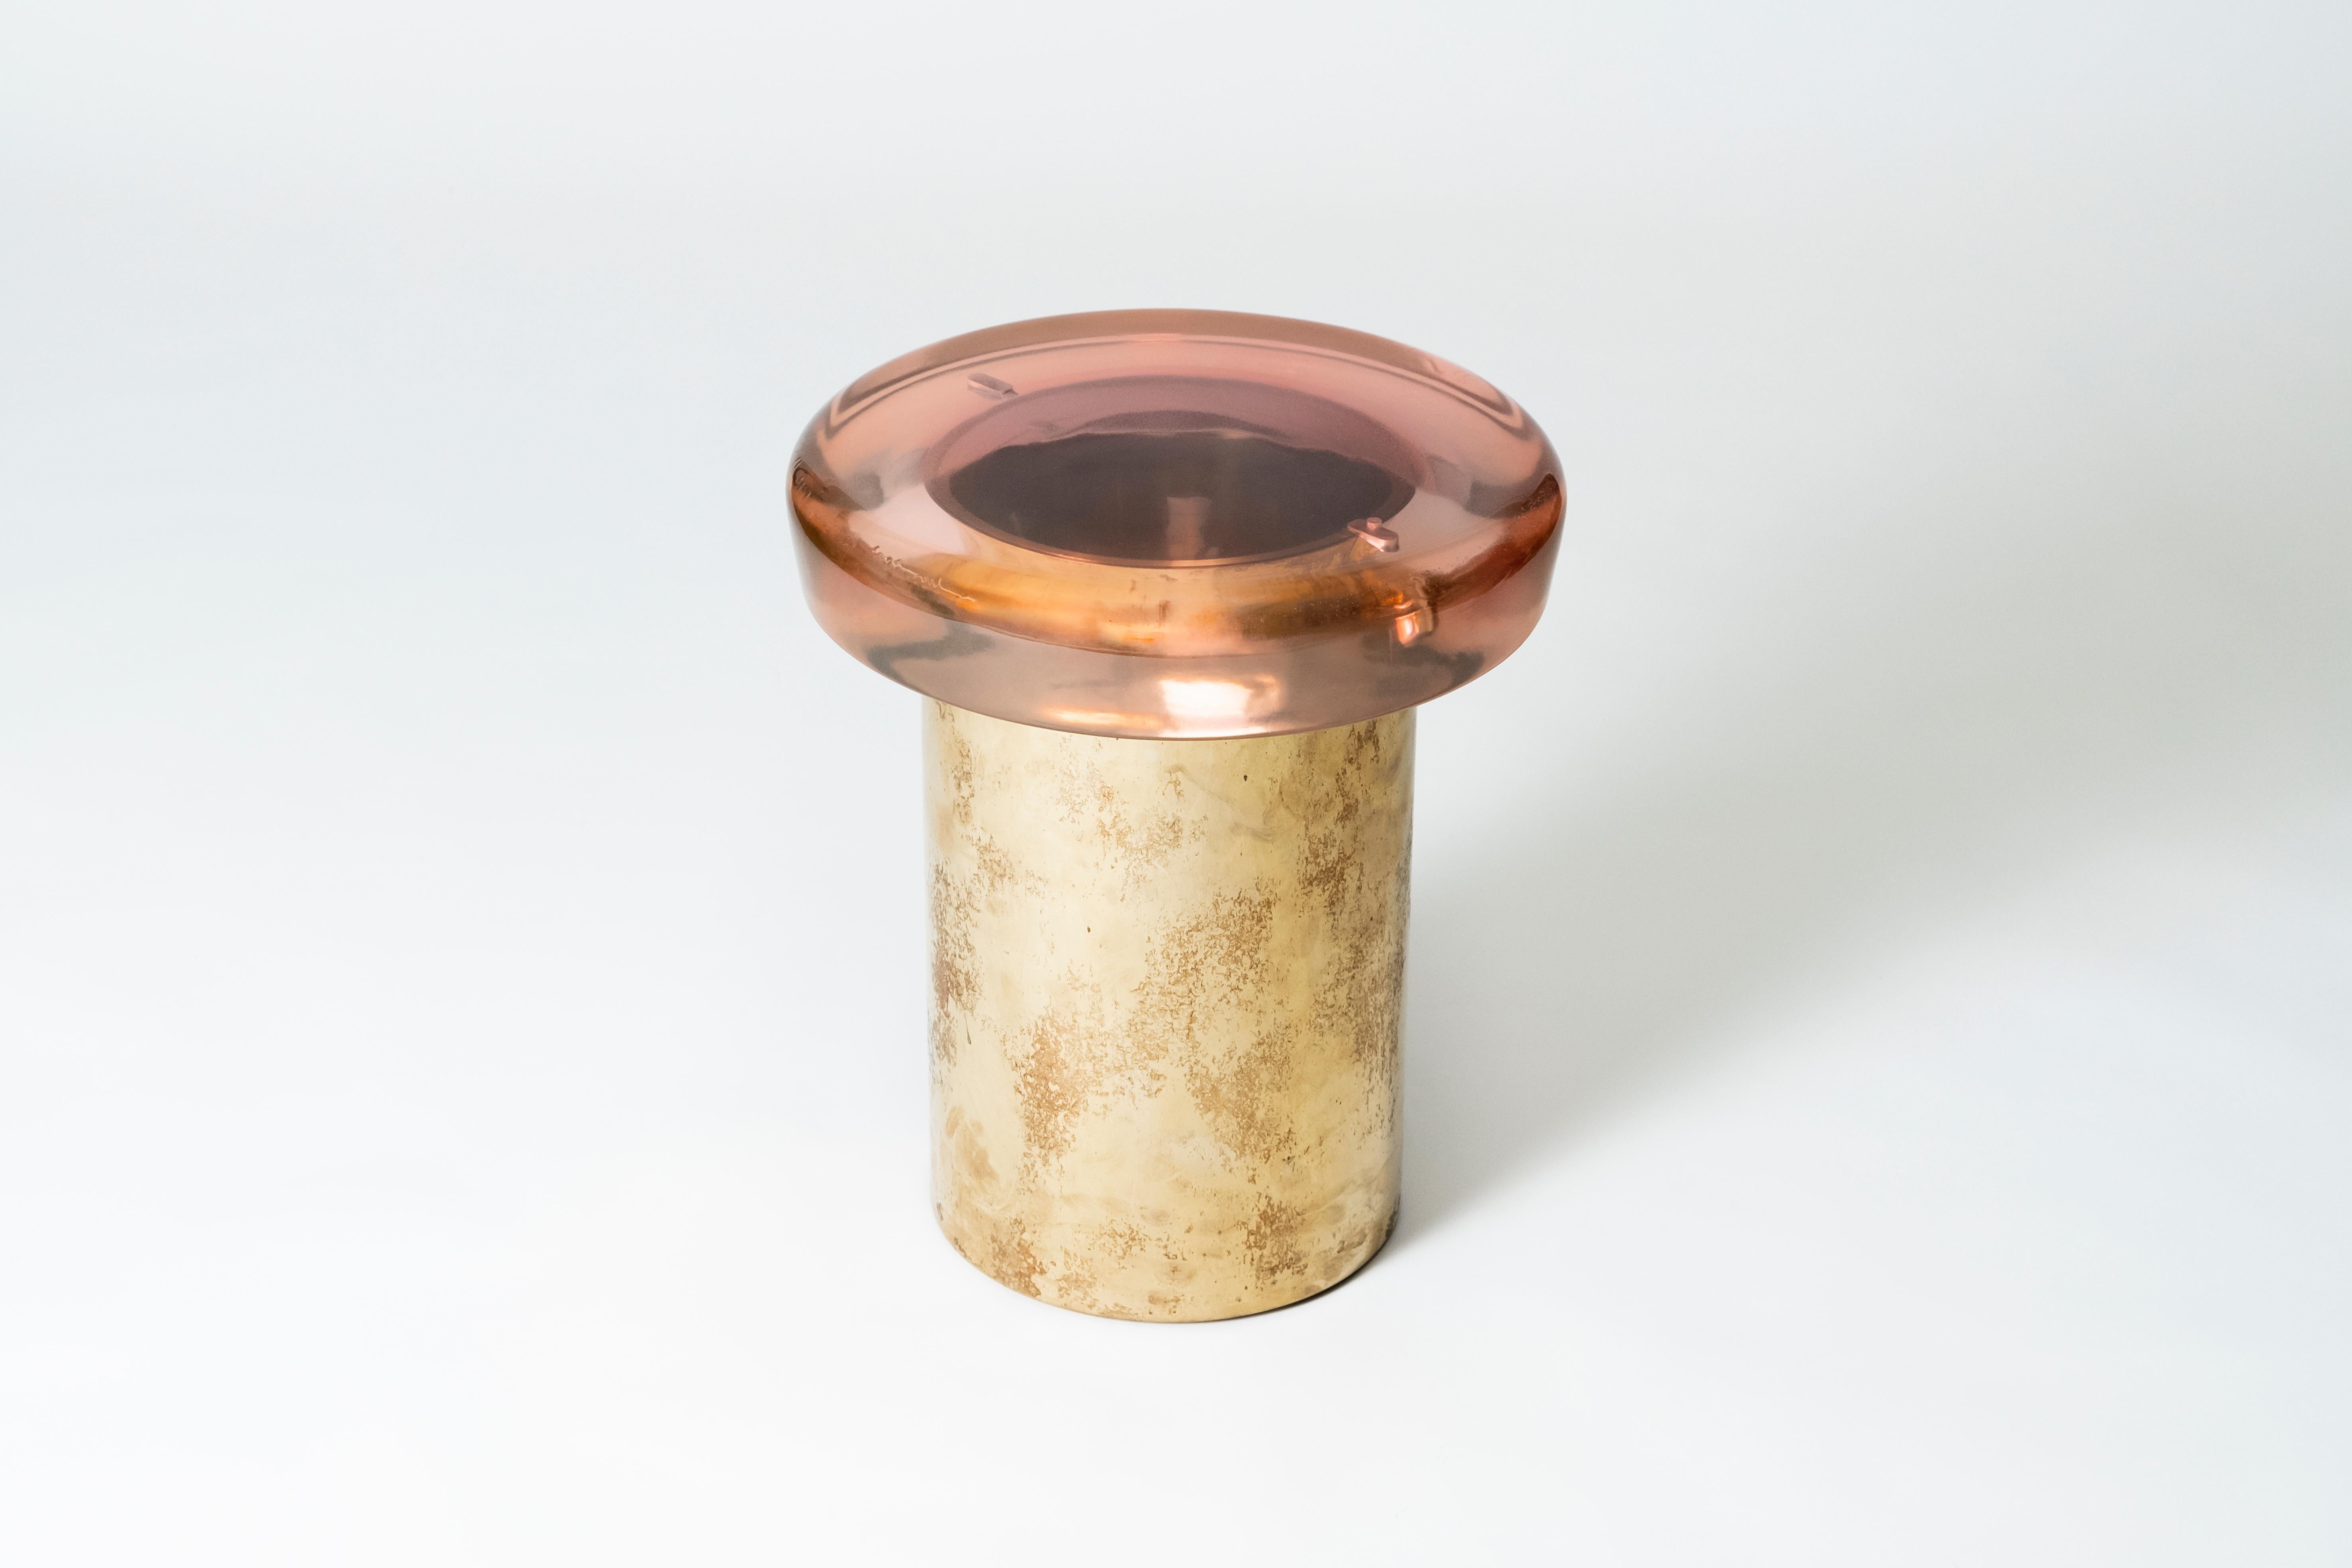 Sgabello Jade di Draga & Aurel
Dimensioni: L 40, P 40, H 46, Ø superiore 40 cm
Materiali: Resina e bronzo

Formati da una combinazione di resina riflettente e ottone massiccio, i tavolini Jade sembrano gemme preziose. La superficie è realizzata